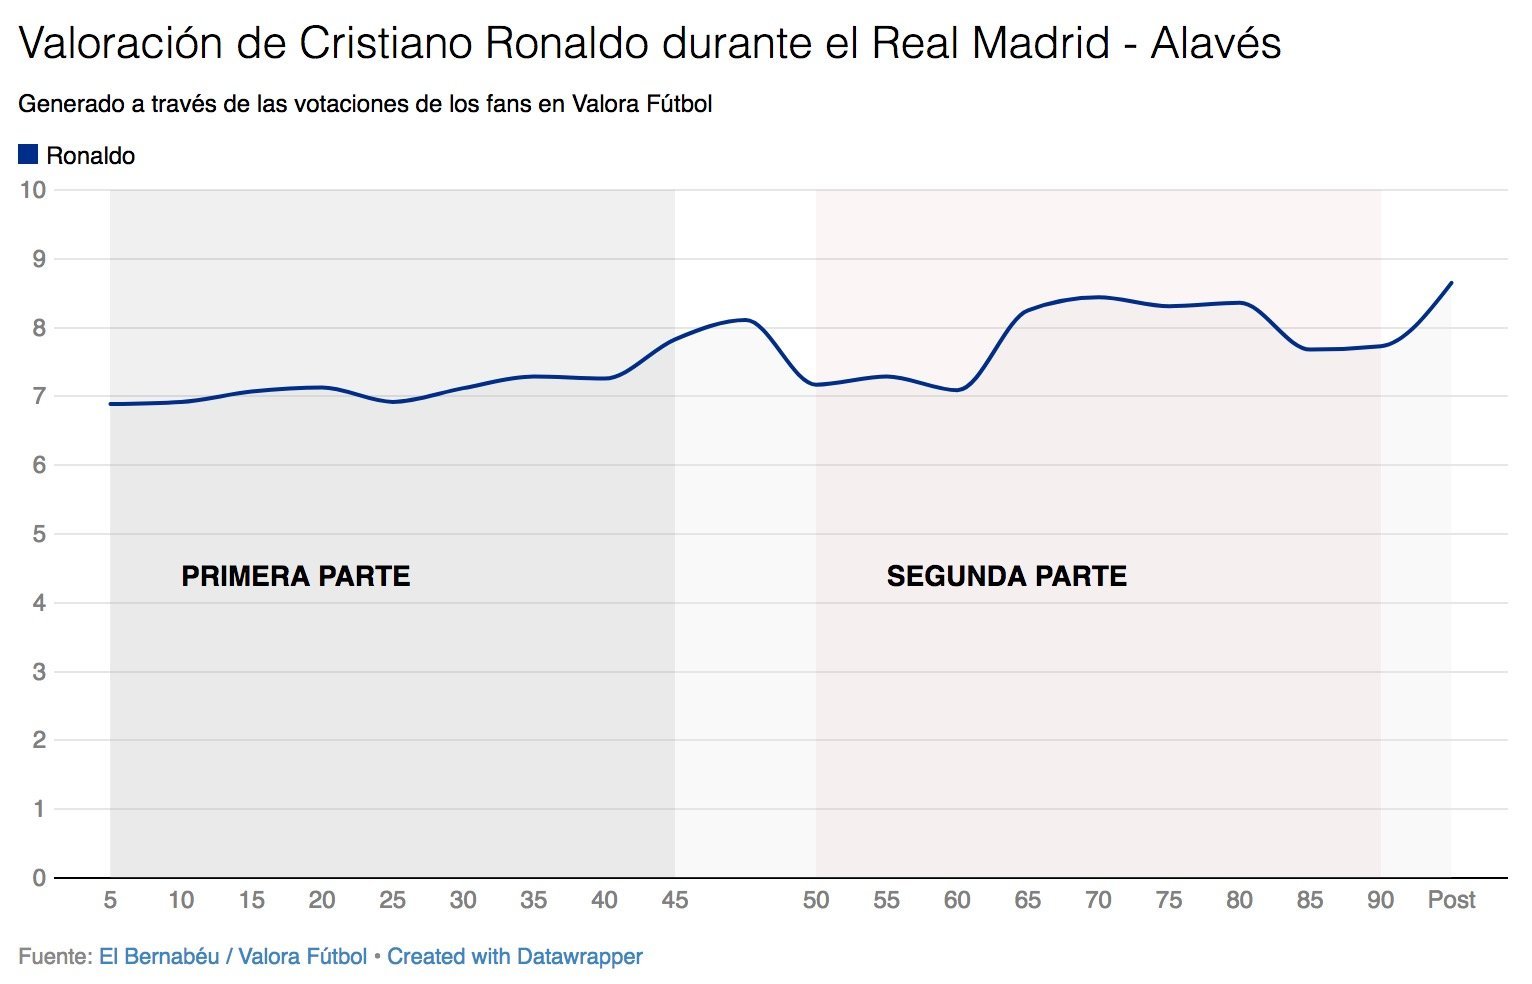 Así votaron los usuarios de Valora Fútbol a Cristiano Ronaldo durante el Real Madrid - Alavés